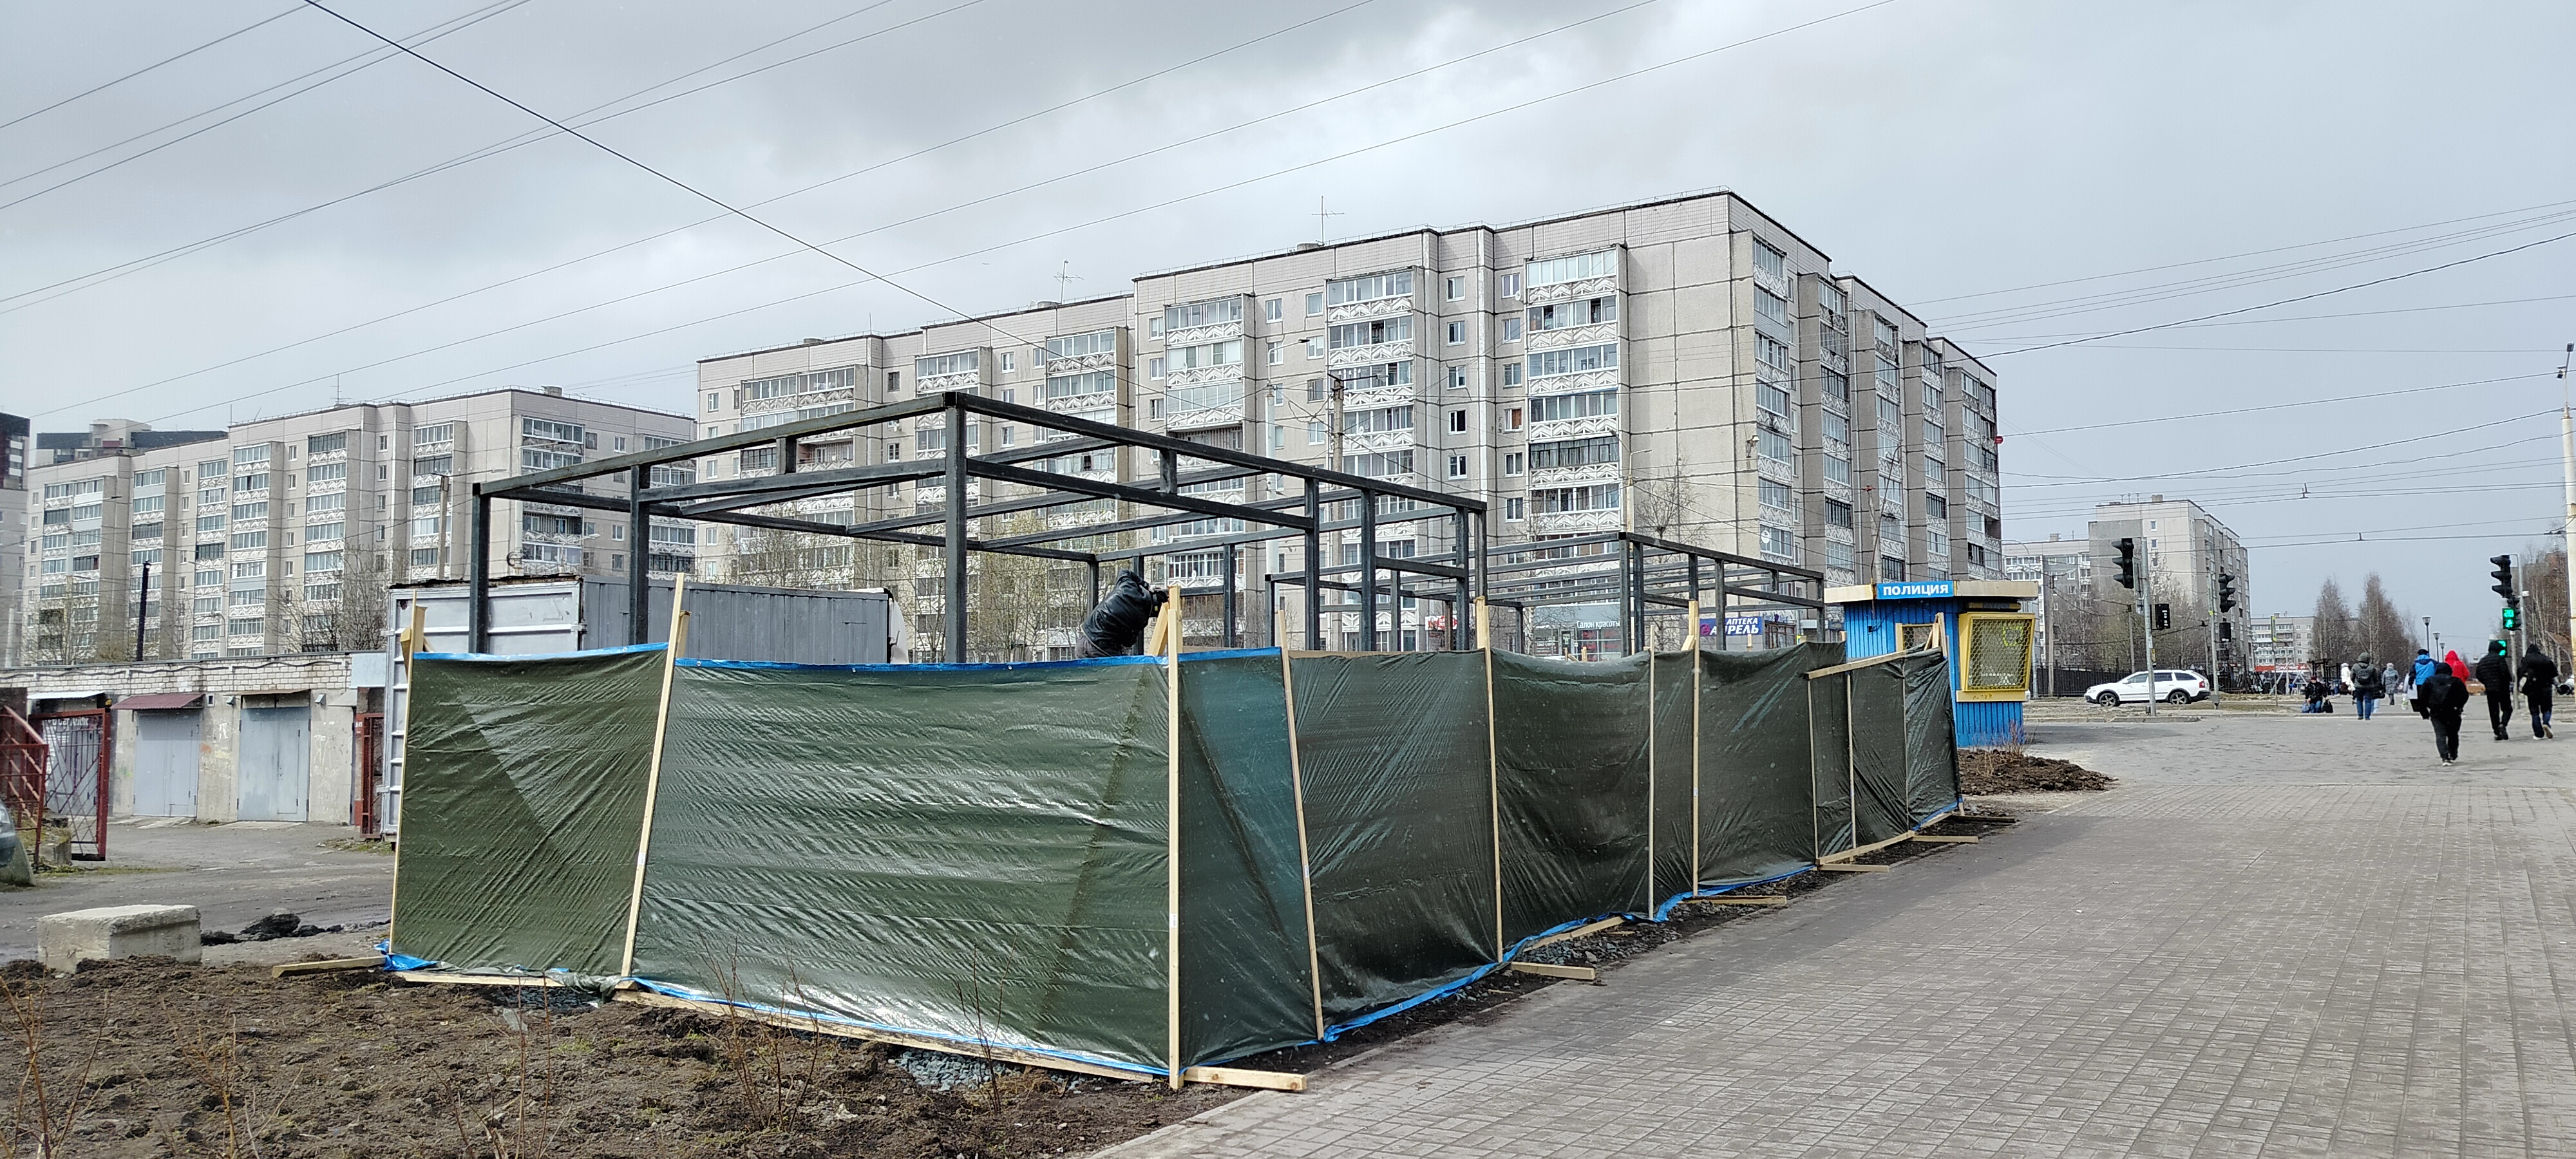 В Петрозаводске бизнесмен начал монтировать павильон, несмотря на запрет мэрии